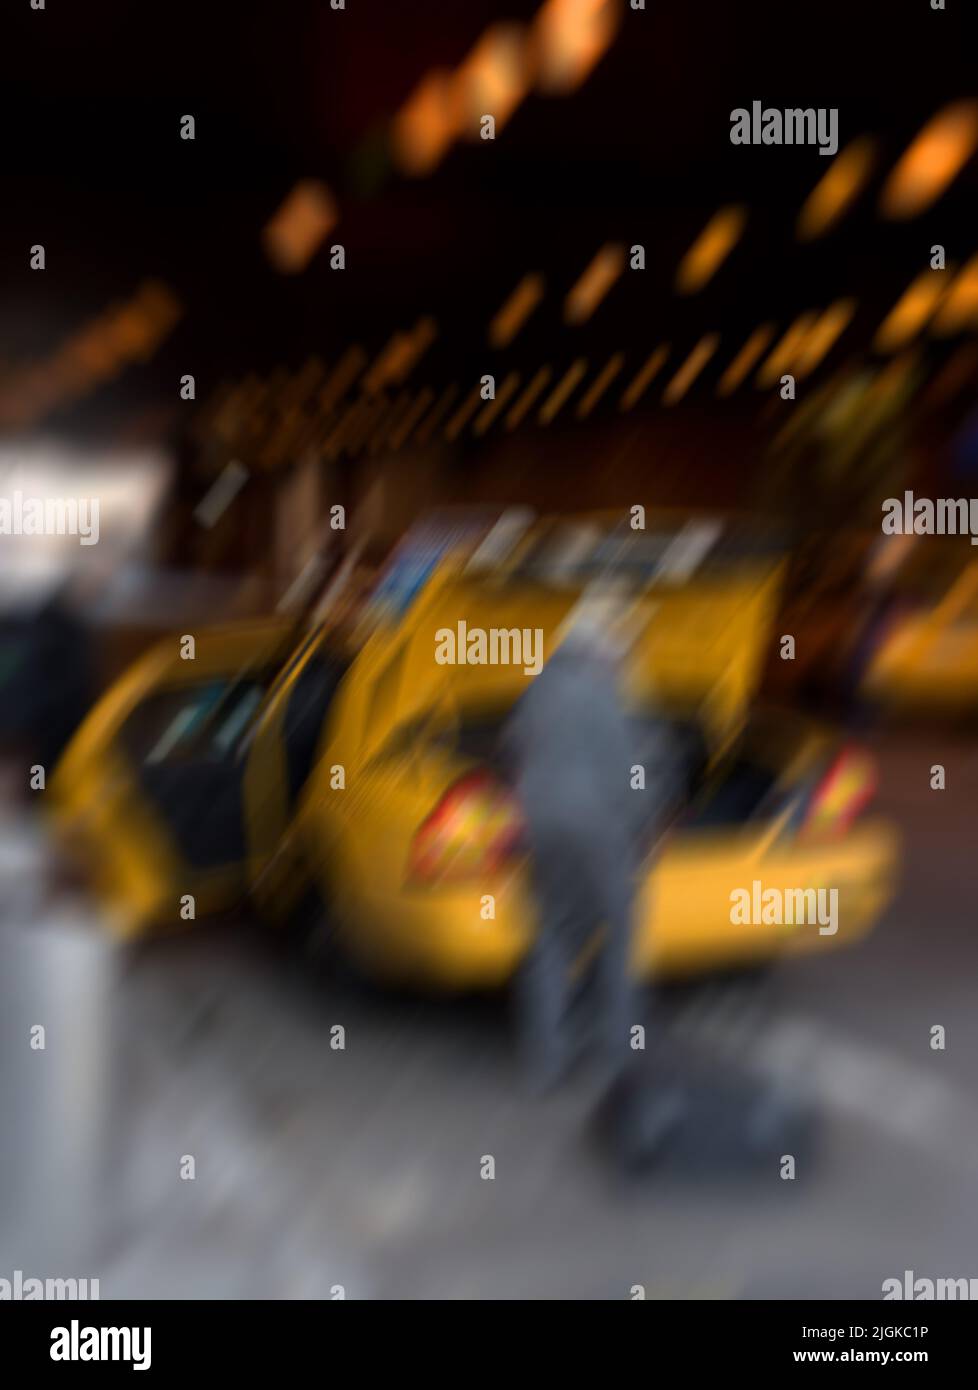 Manhattan - verschwommenes Taxi. Objektiv verschwommen Foto Alltag im Straßenleben in New York - Manhattan. Stockfoto